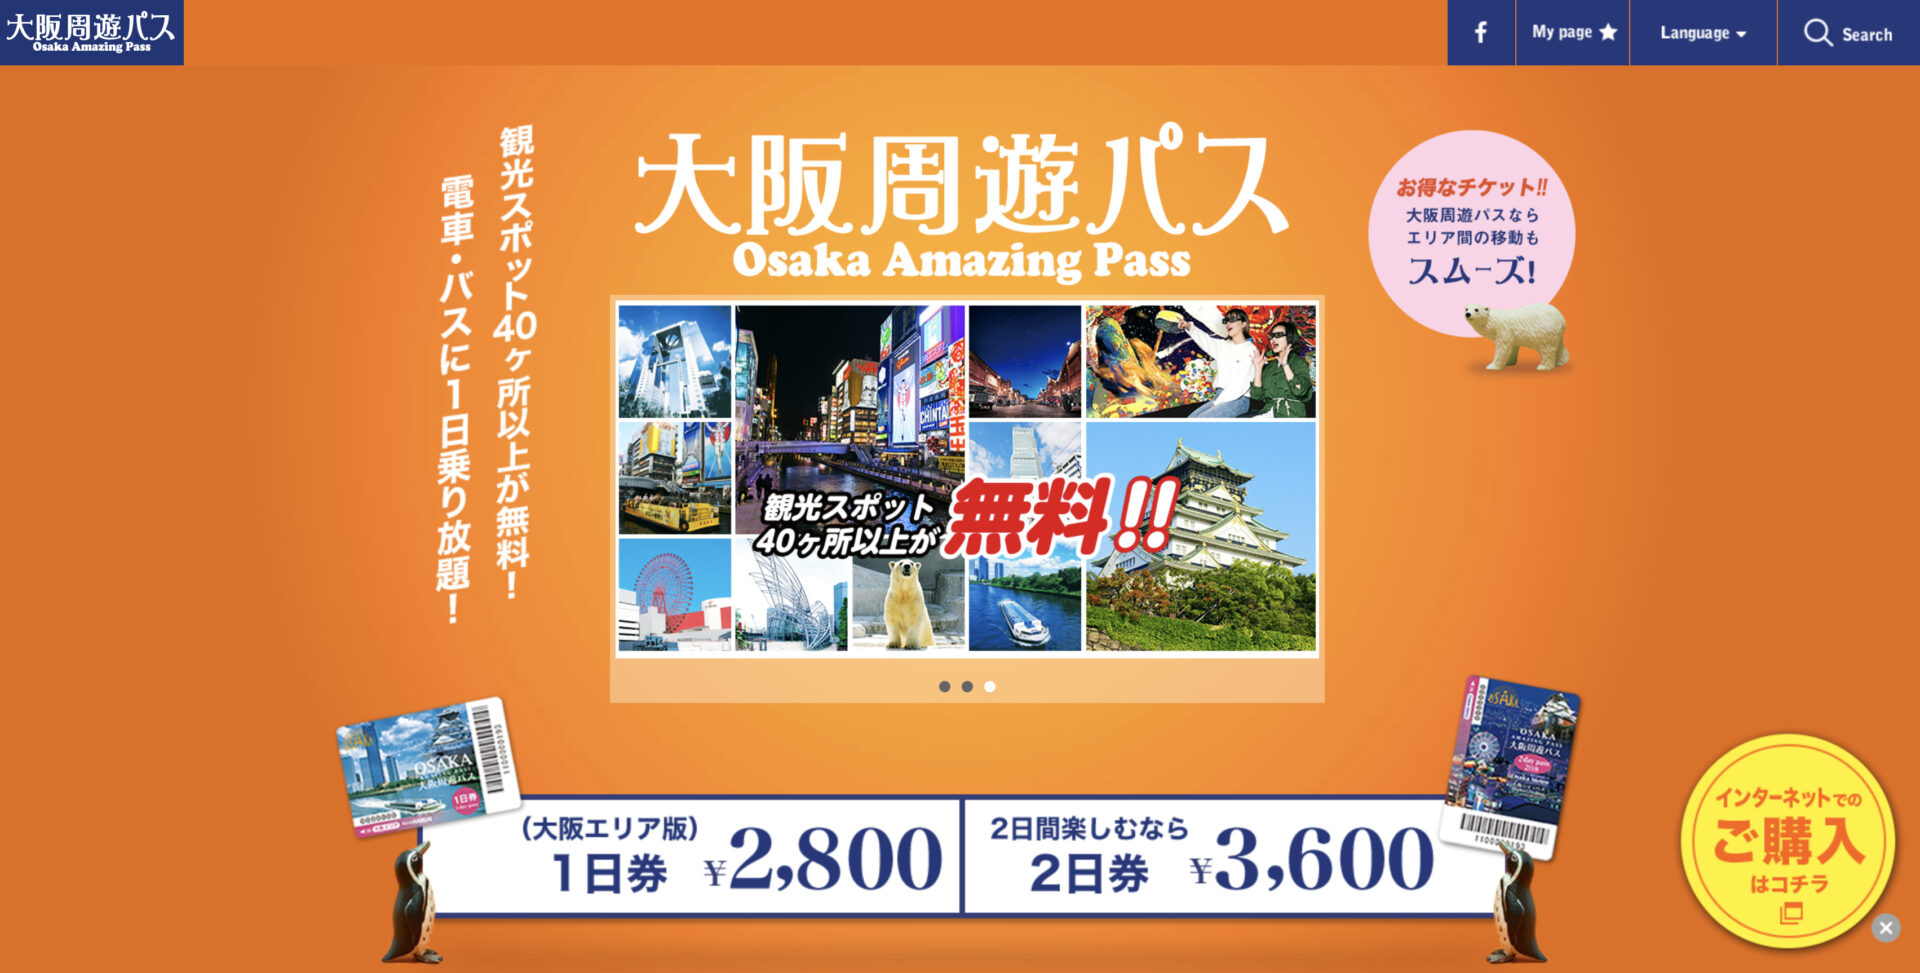 観光スポット40ヶ所以上無料、電車乗り放題の「大阪周遊パス」